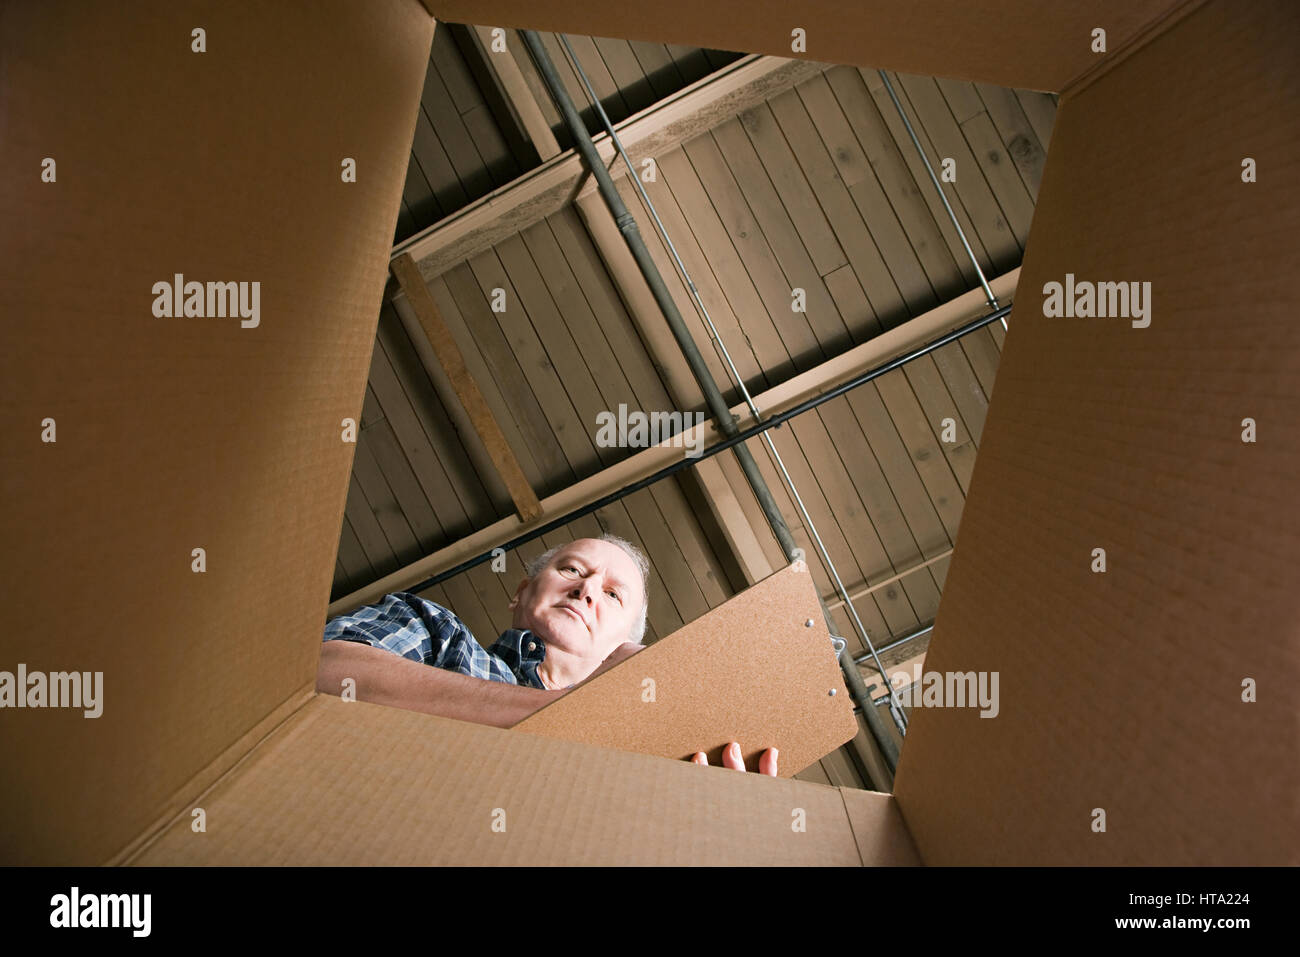 Man looking in cardboard box Stock Photo